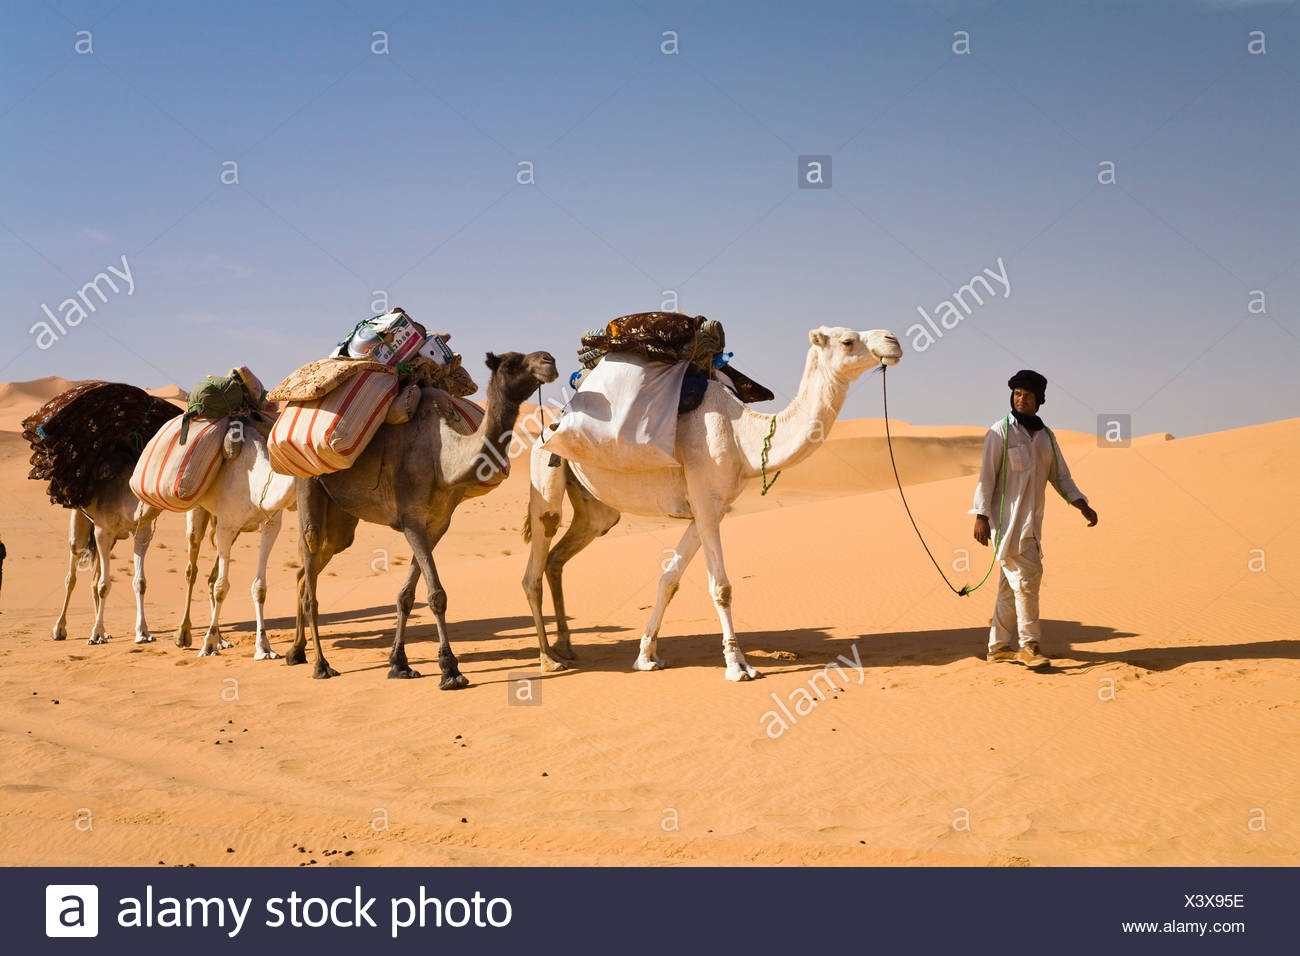 Caravane De Chameaux Dans Le Desert De Libye Les Chameaux Camelus Dromedarius Libye Sahara Afrique Du Nord Afrique Photo Stock Alamy